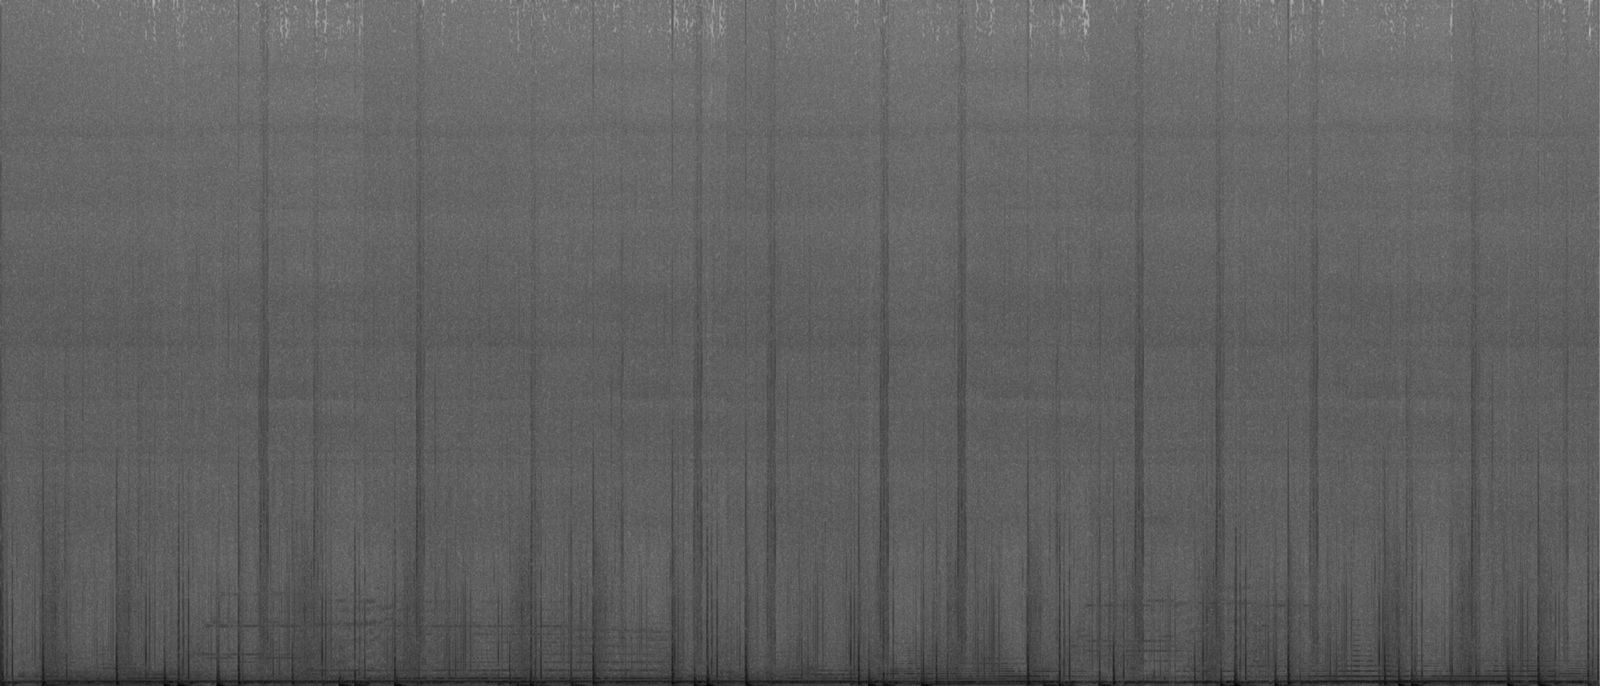 © Jošt Dolinšek - Soundscape spectrogram no. 6 / visualisation initially made for printed matter